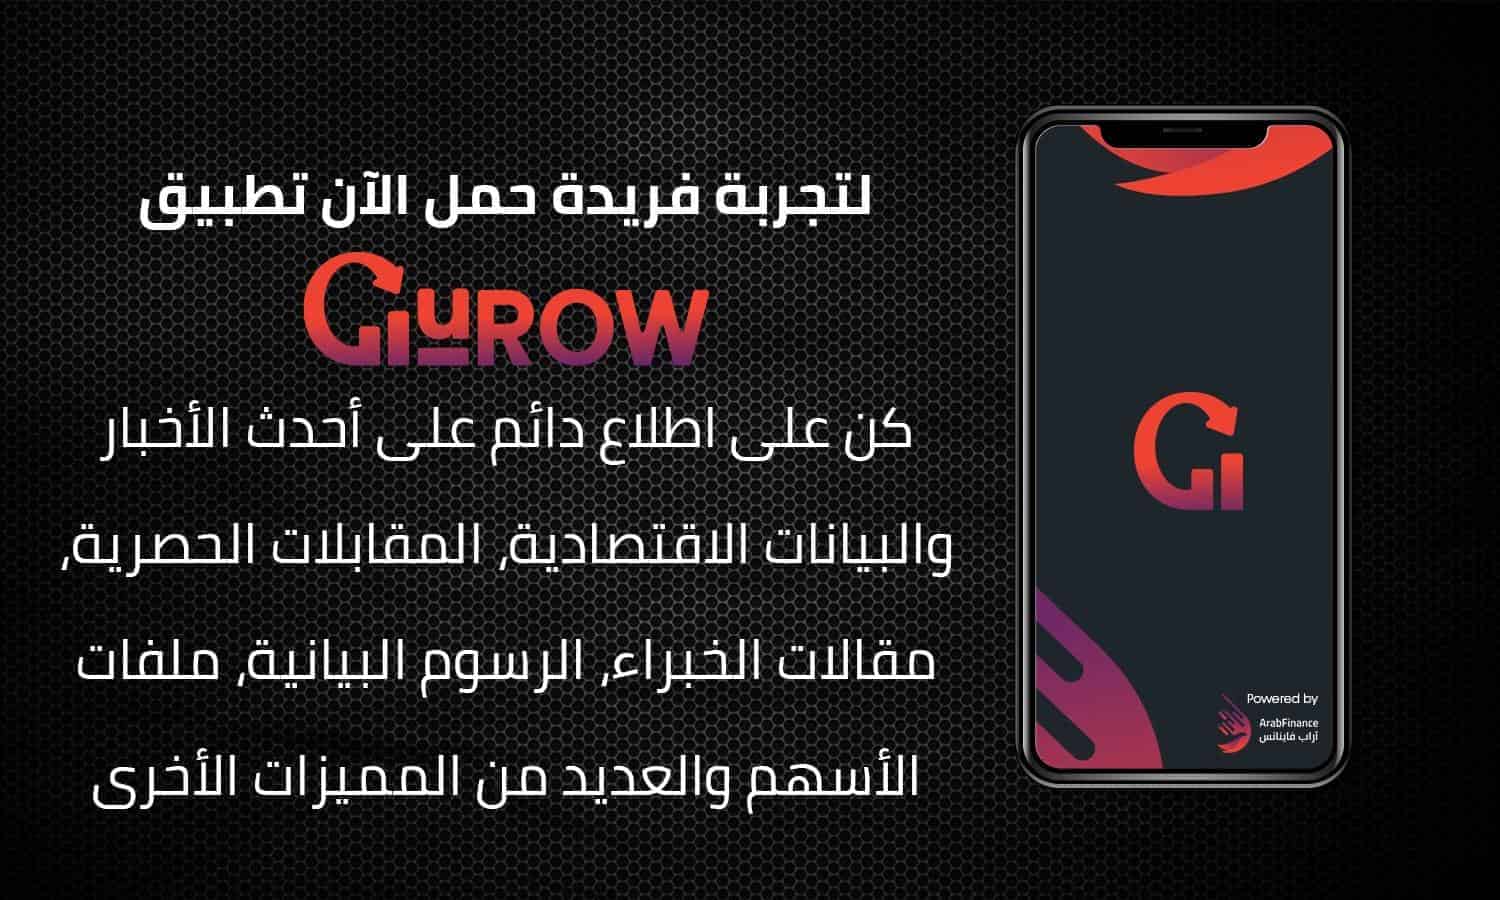 تطبيق "GuROW" من آراب فاينانس يقود ثورة في عالم الأعمال في مصر